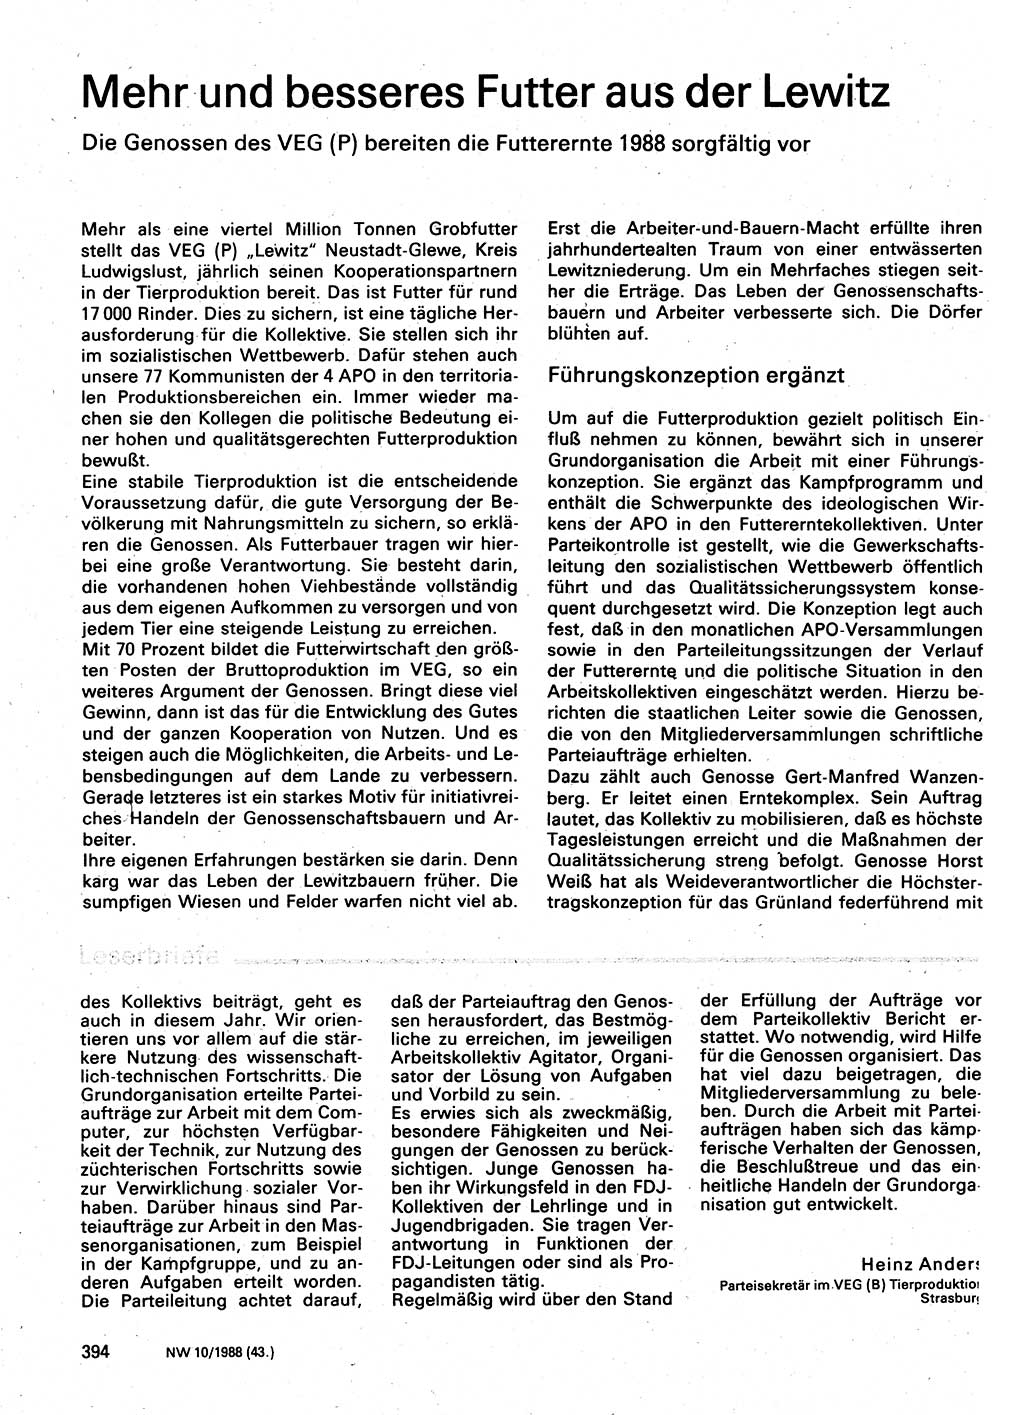 Neuer Weg (NW), Organ des Zentralkomitees (ZK) der SED (Sozialistische Einheitspartei Deutschlands) für Fragen des Parteilebens, 43. Jahrgang [Deutsche Demokratische Republik (DDR)] 1988, Seite 394 (NW ZK SED DDR 1988, S. 394)